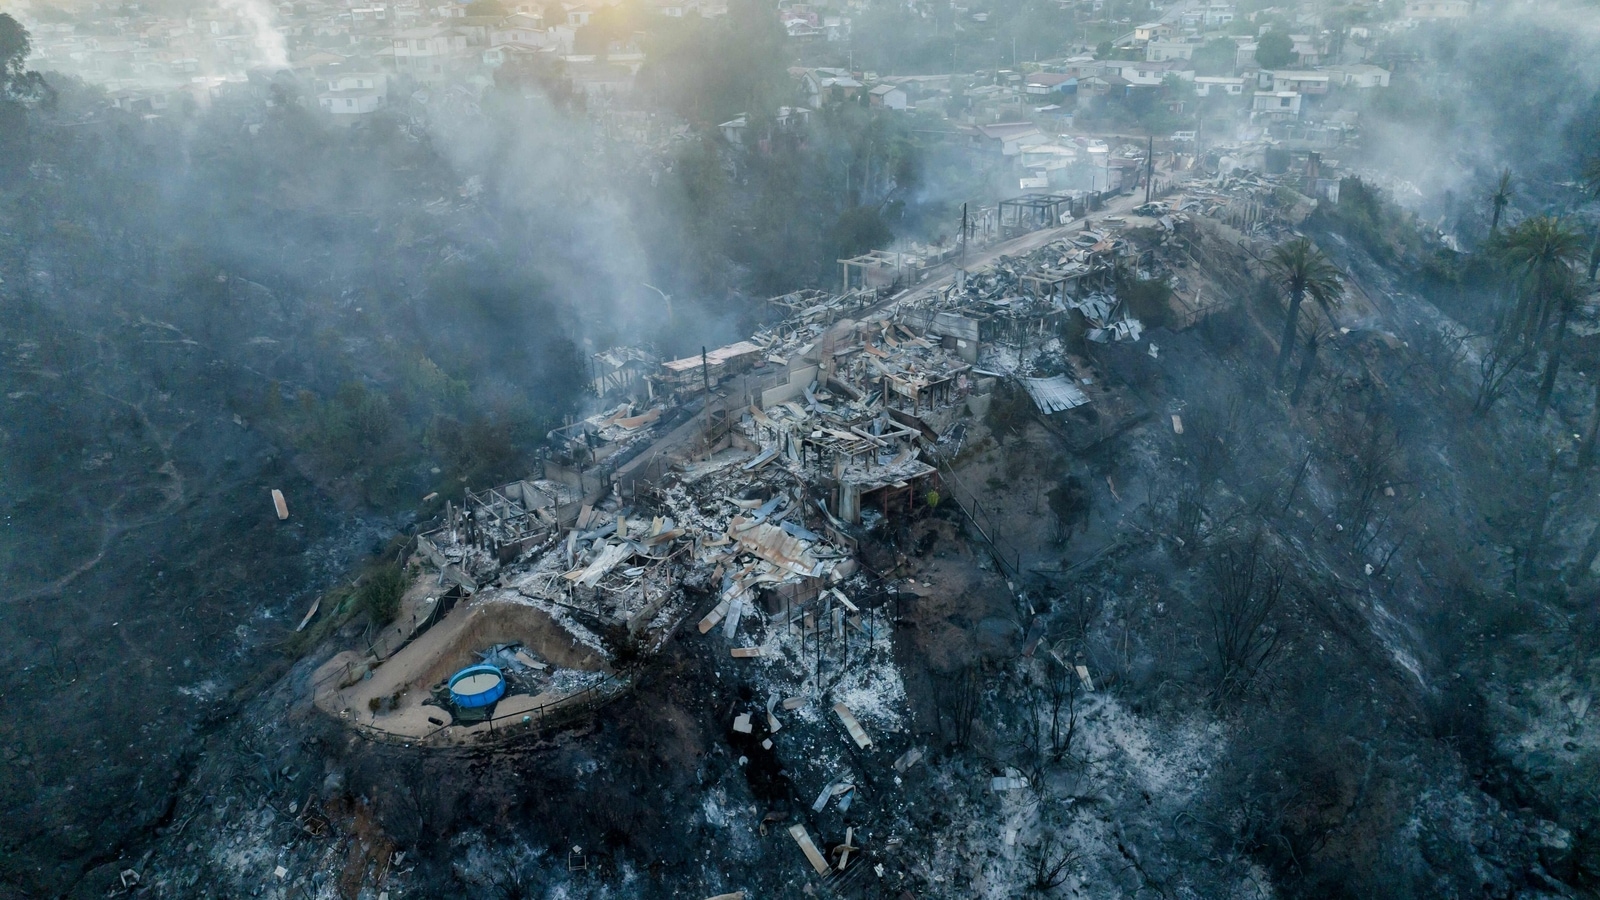 En Fotos |  400 casas destruidas en un incendio forestal en una ciudad chilena